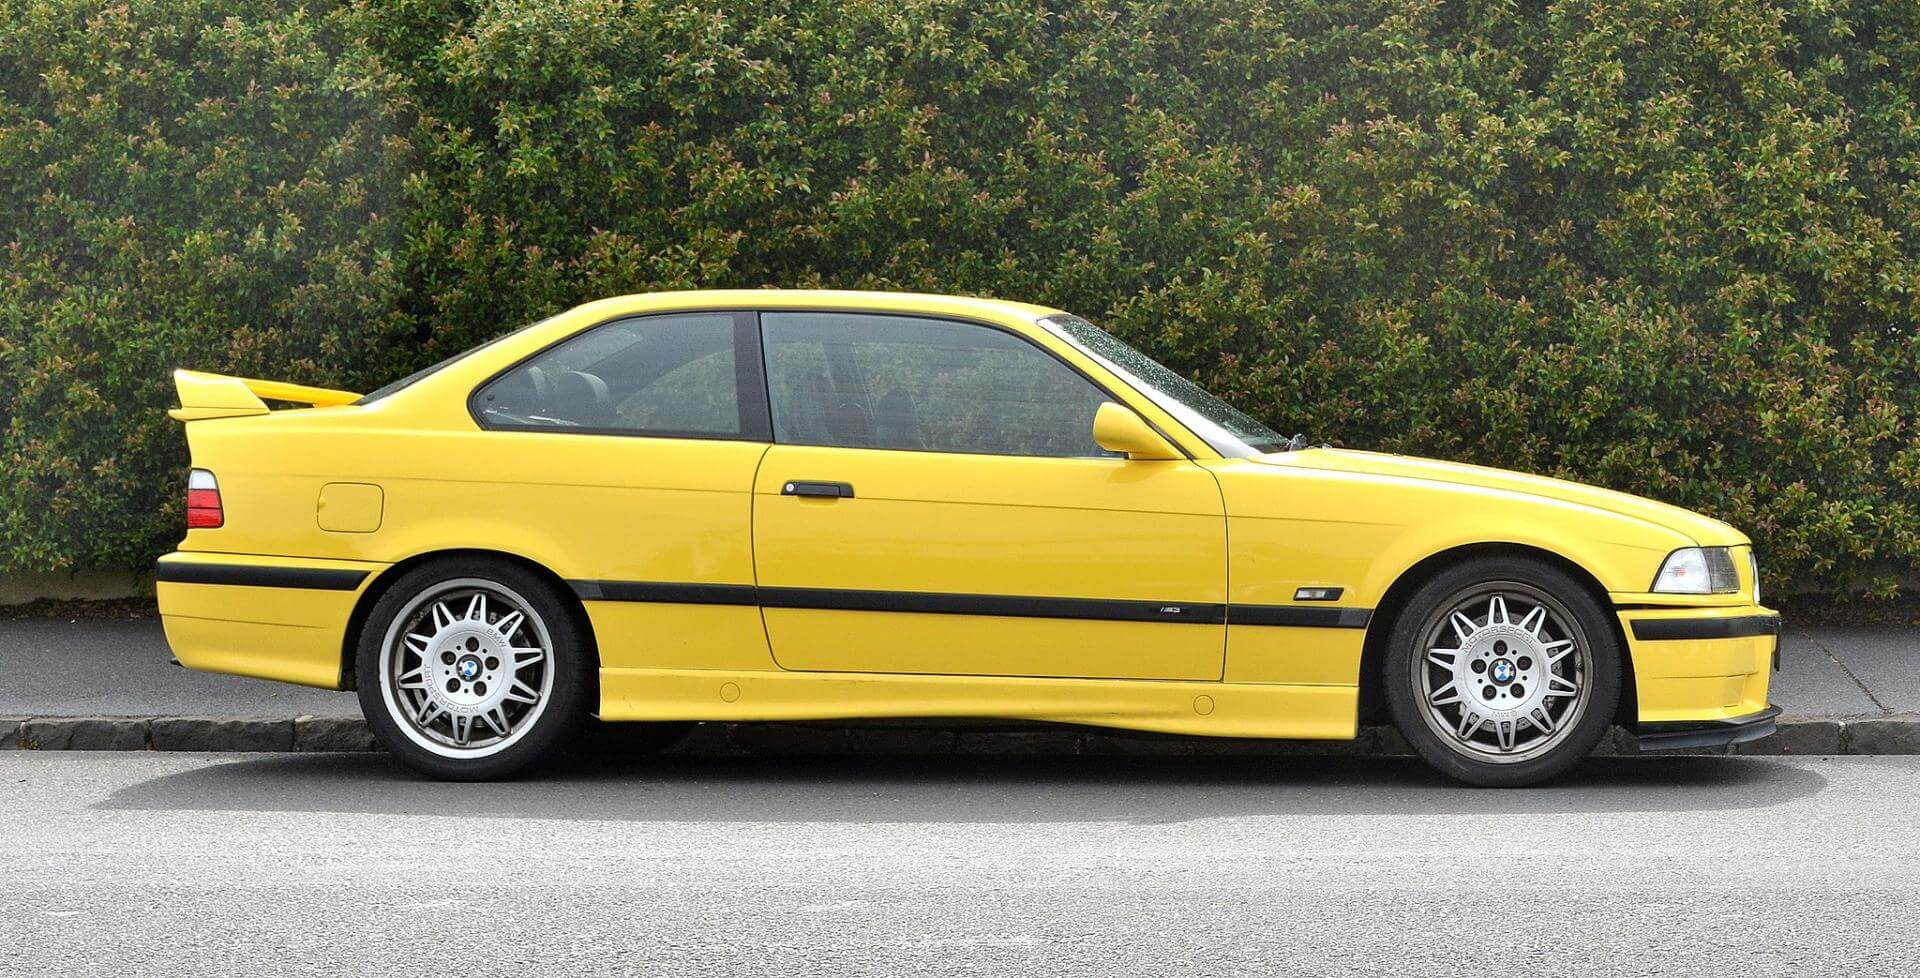 Dieses Foto zeigt einen gelben BMW M3, der 2023 zum Oldtimer avanciert.